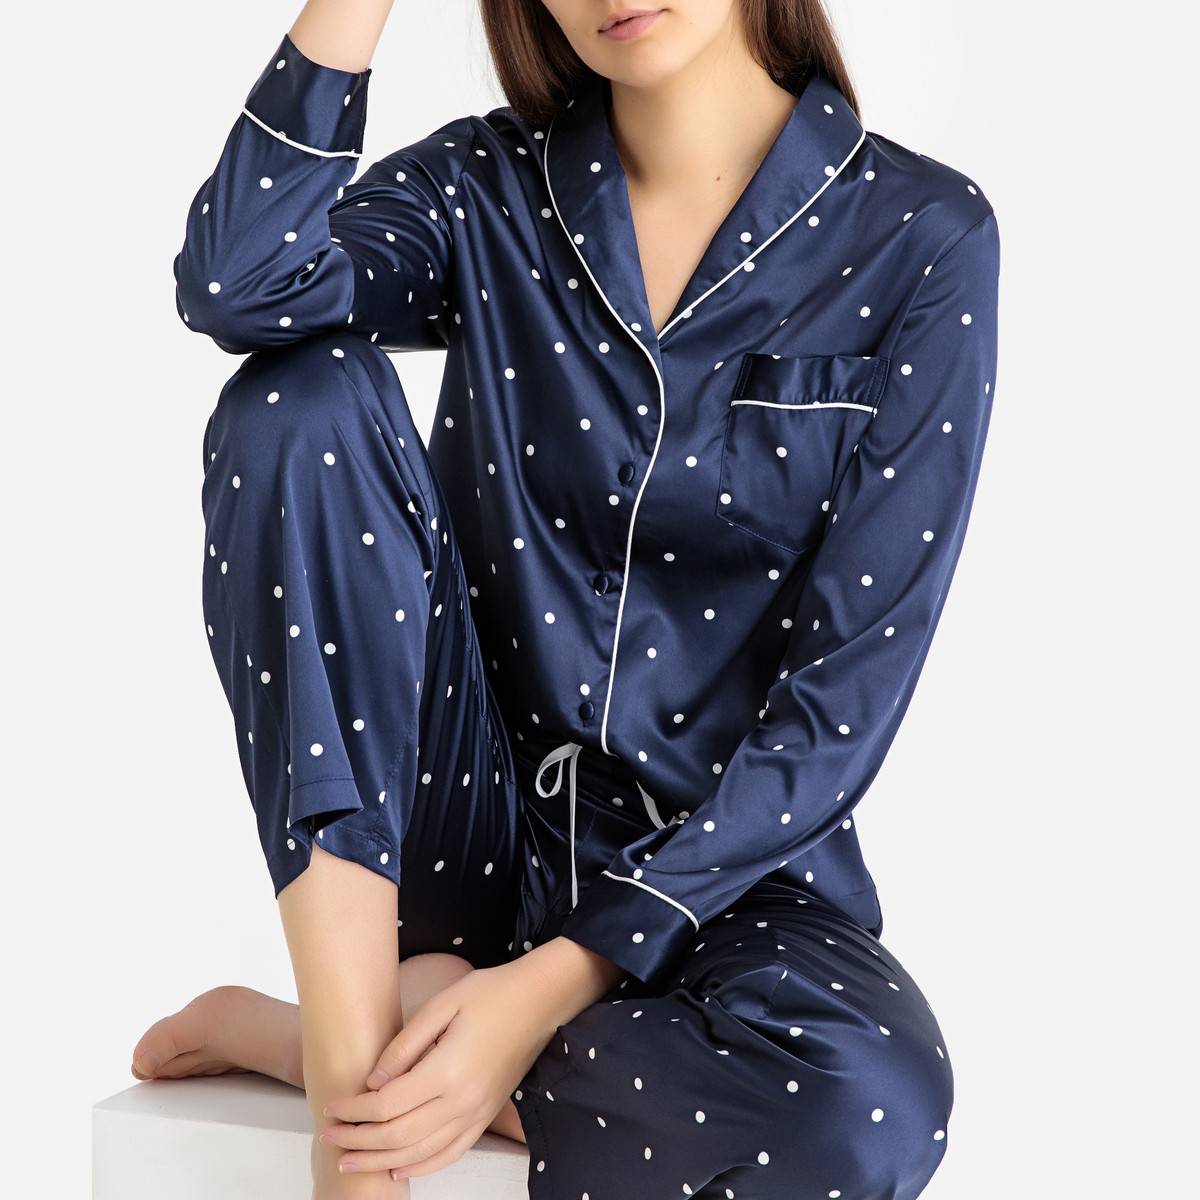 Купить пижаму екатеринбург. La Redoute пижама. Женская пижама ля редут синяя. Жена в пижаме. Модные пижамы.